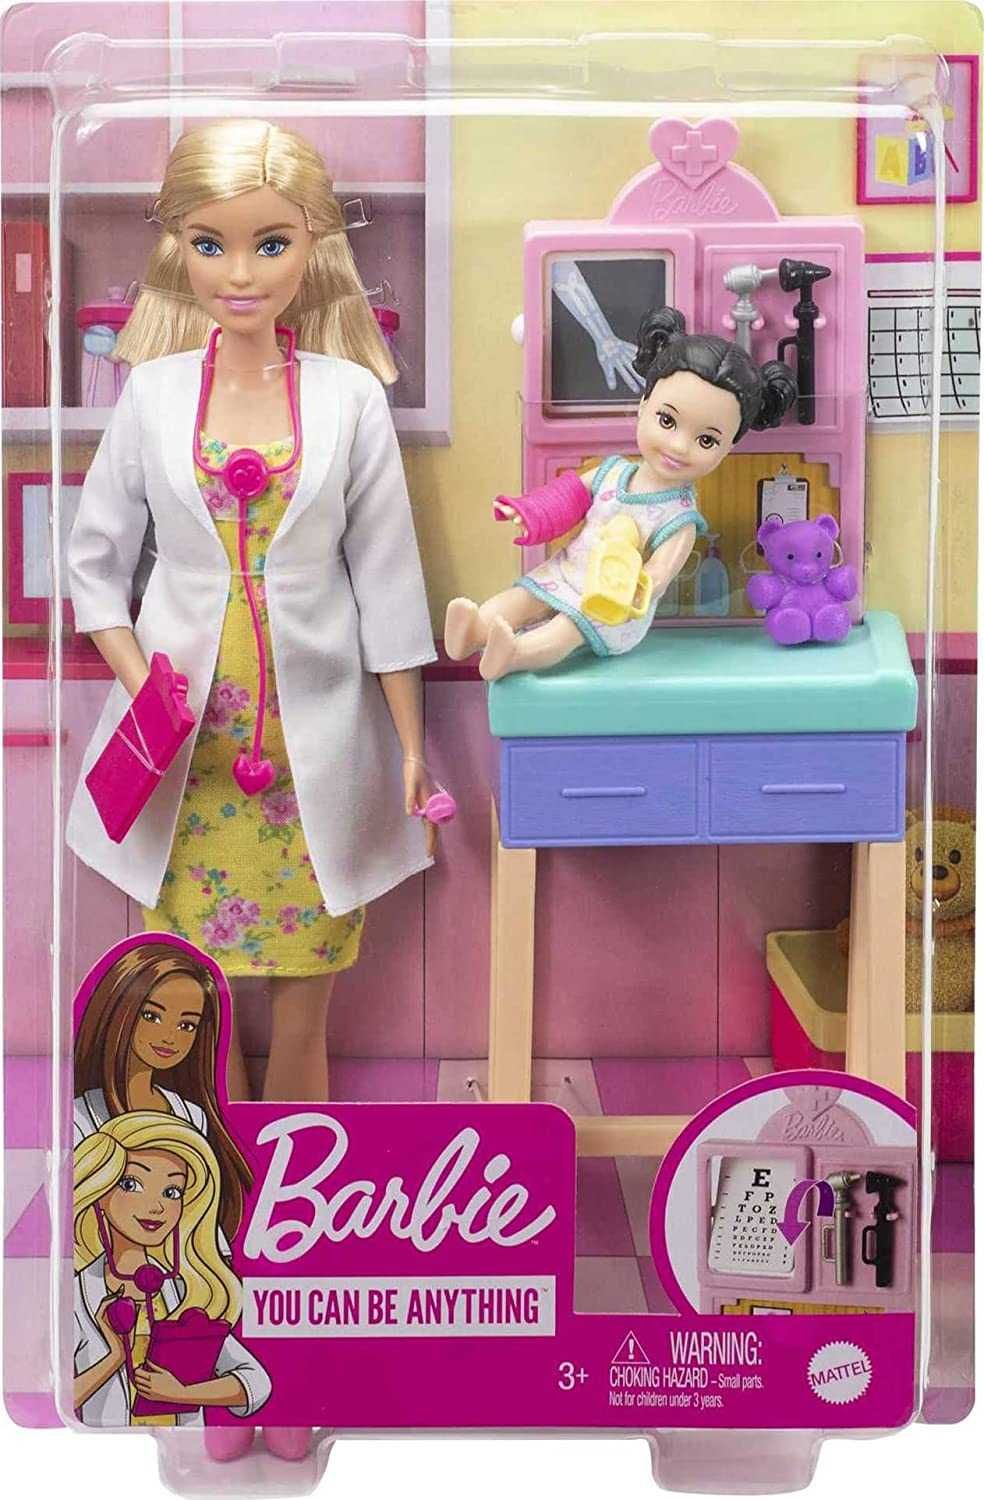 Игровой набор кукла Barbie  Барби педиатр детский доктор.